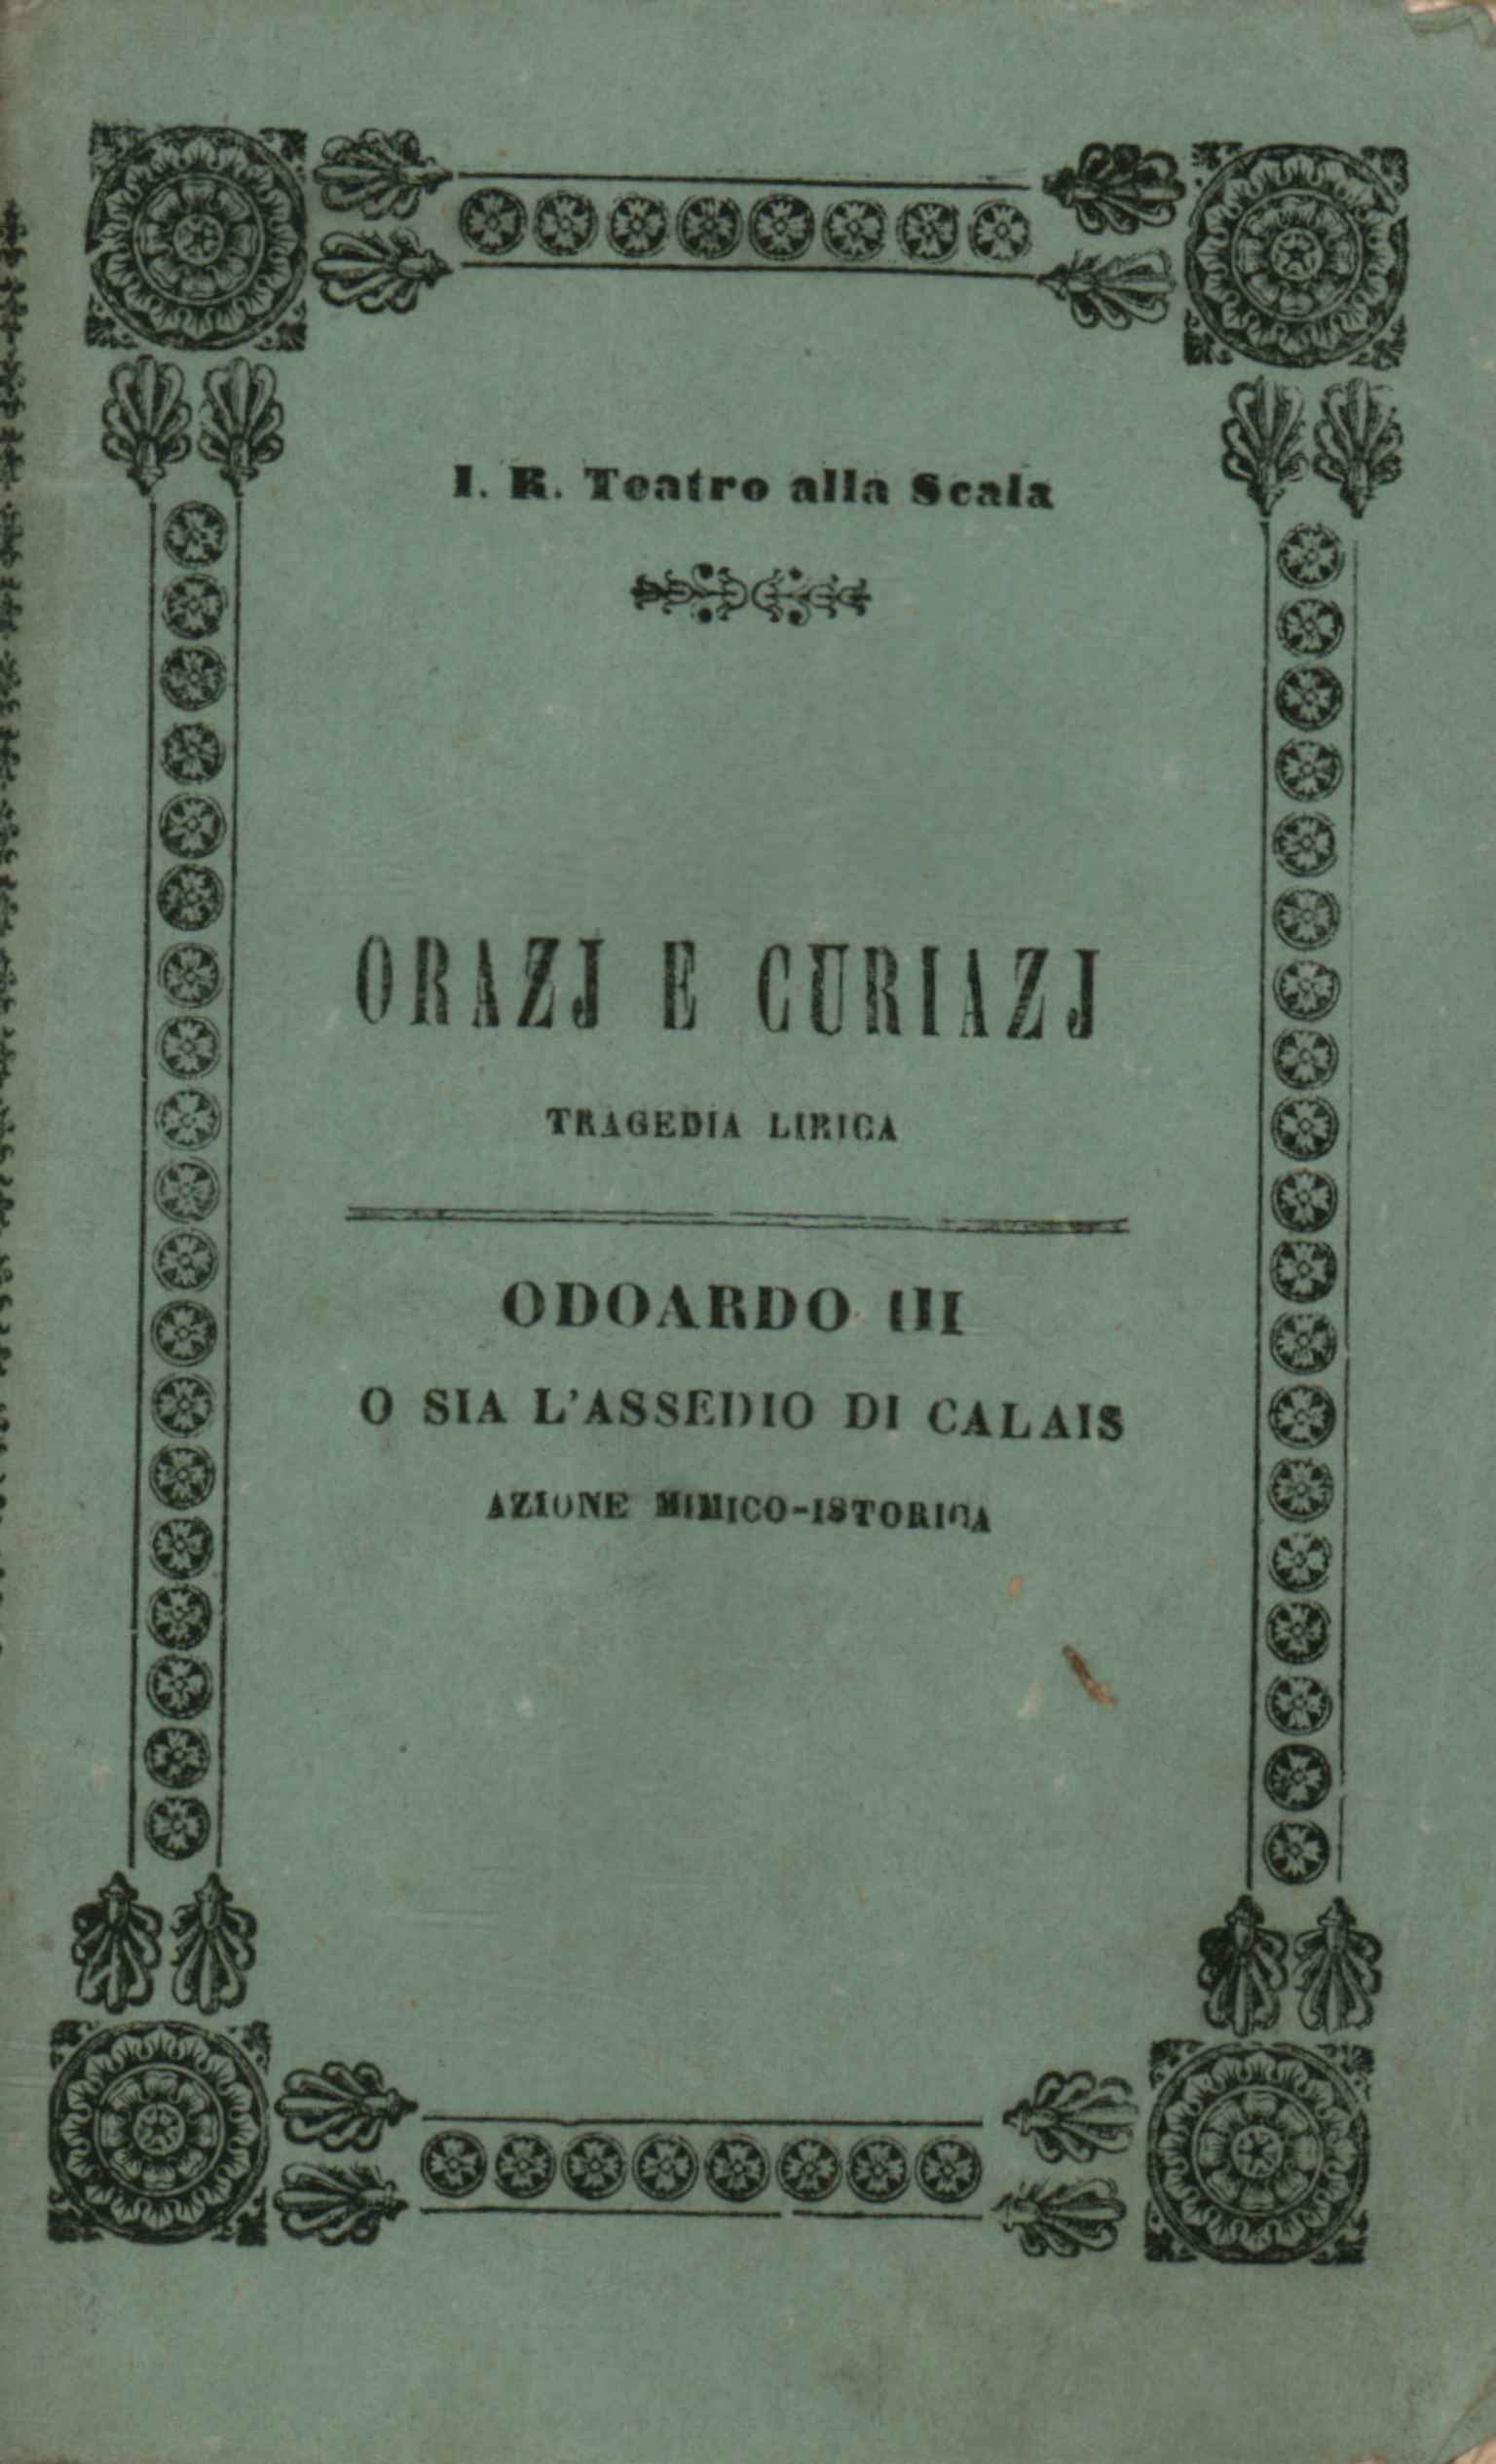 Orazj and Curiazj Lyrical tragedy in three